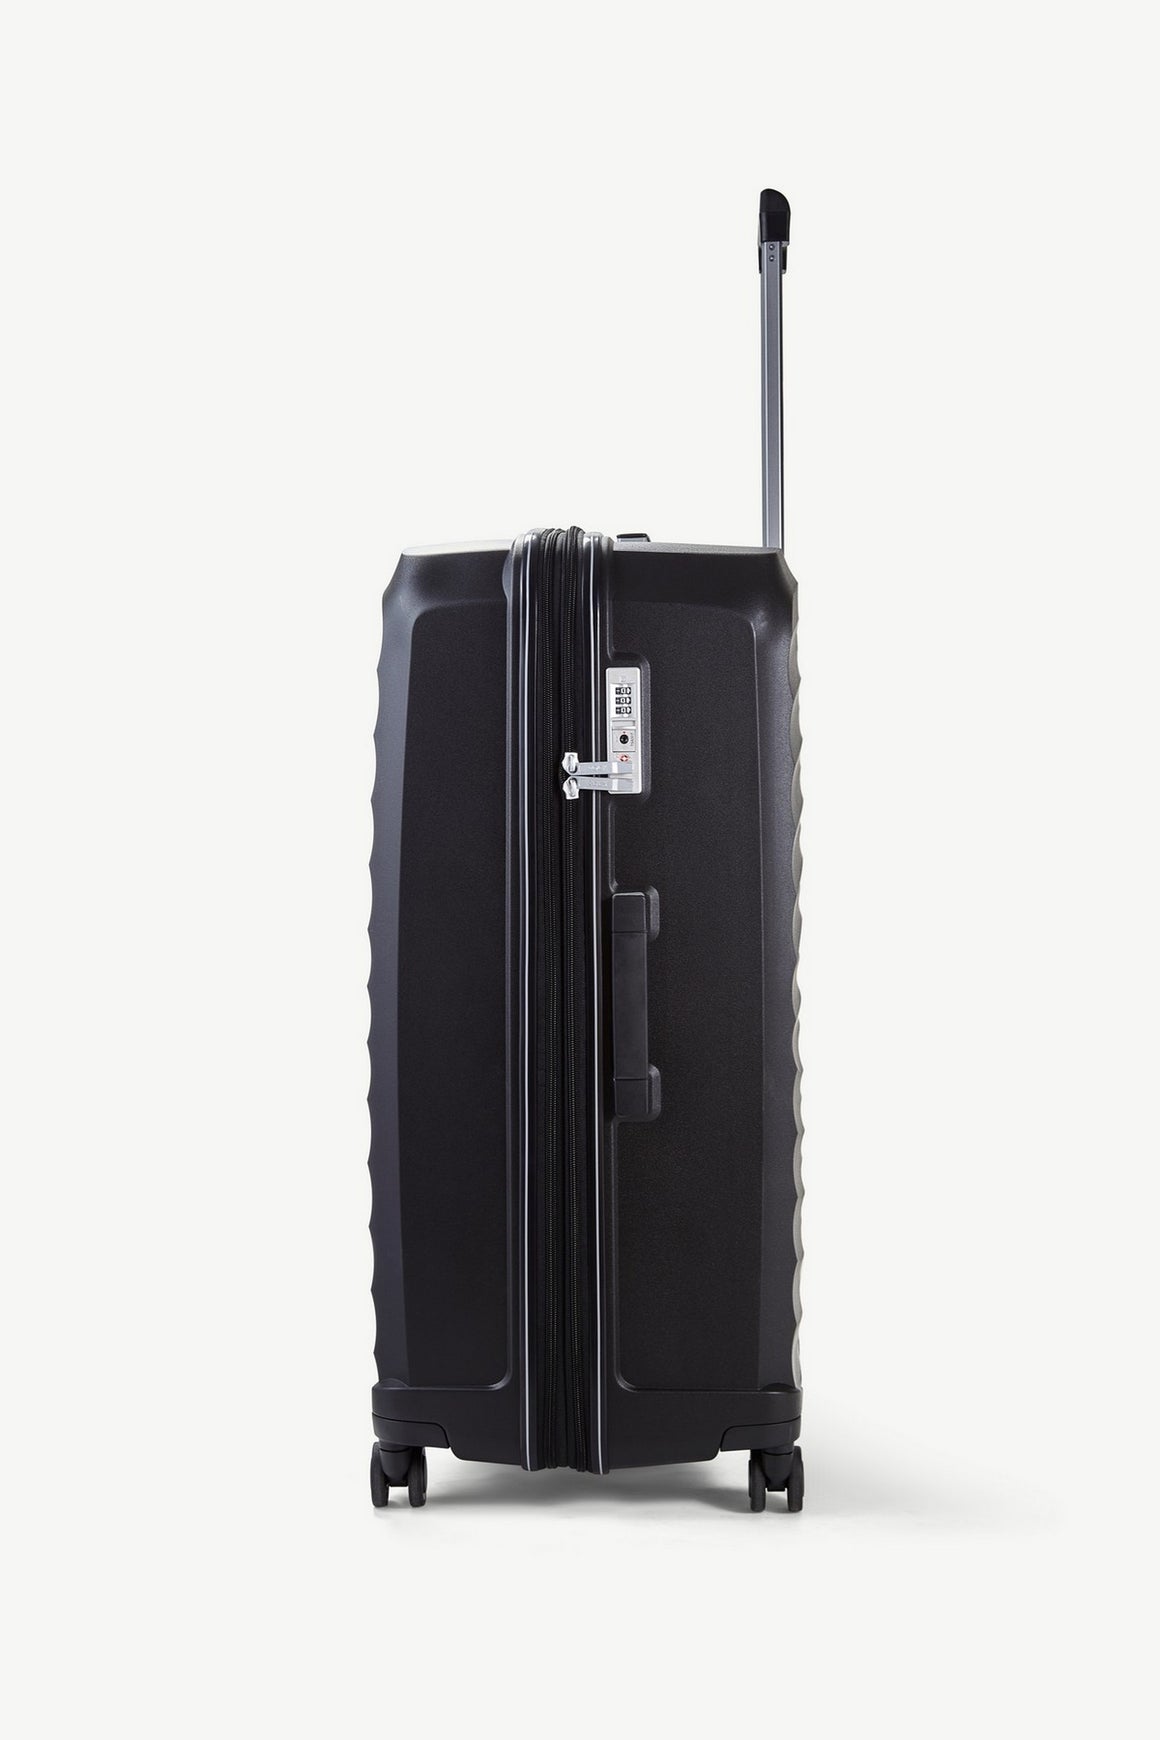 Sunwave Medium Suitcase